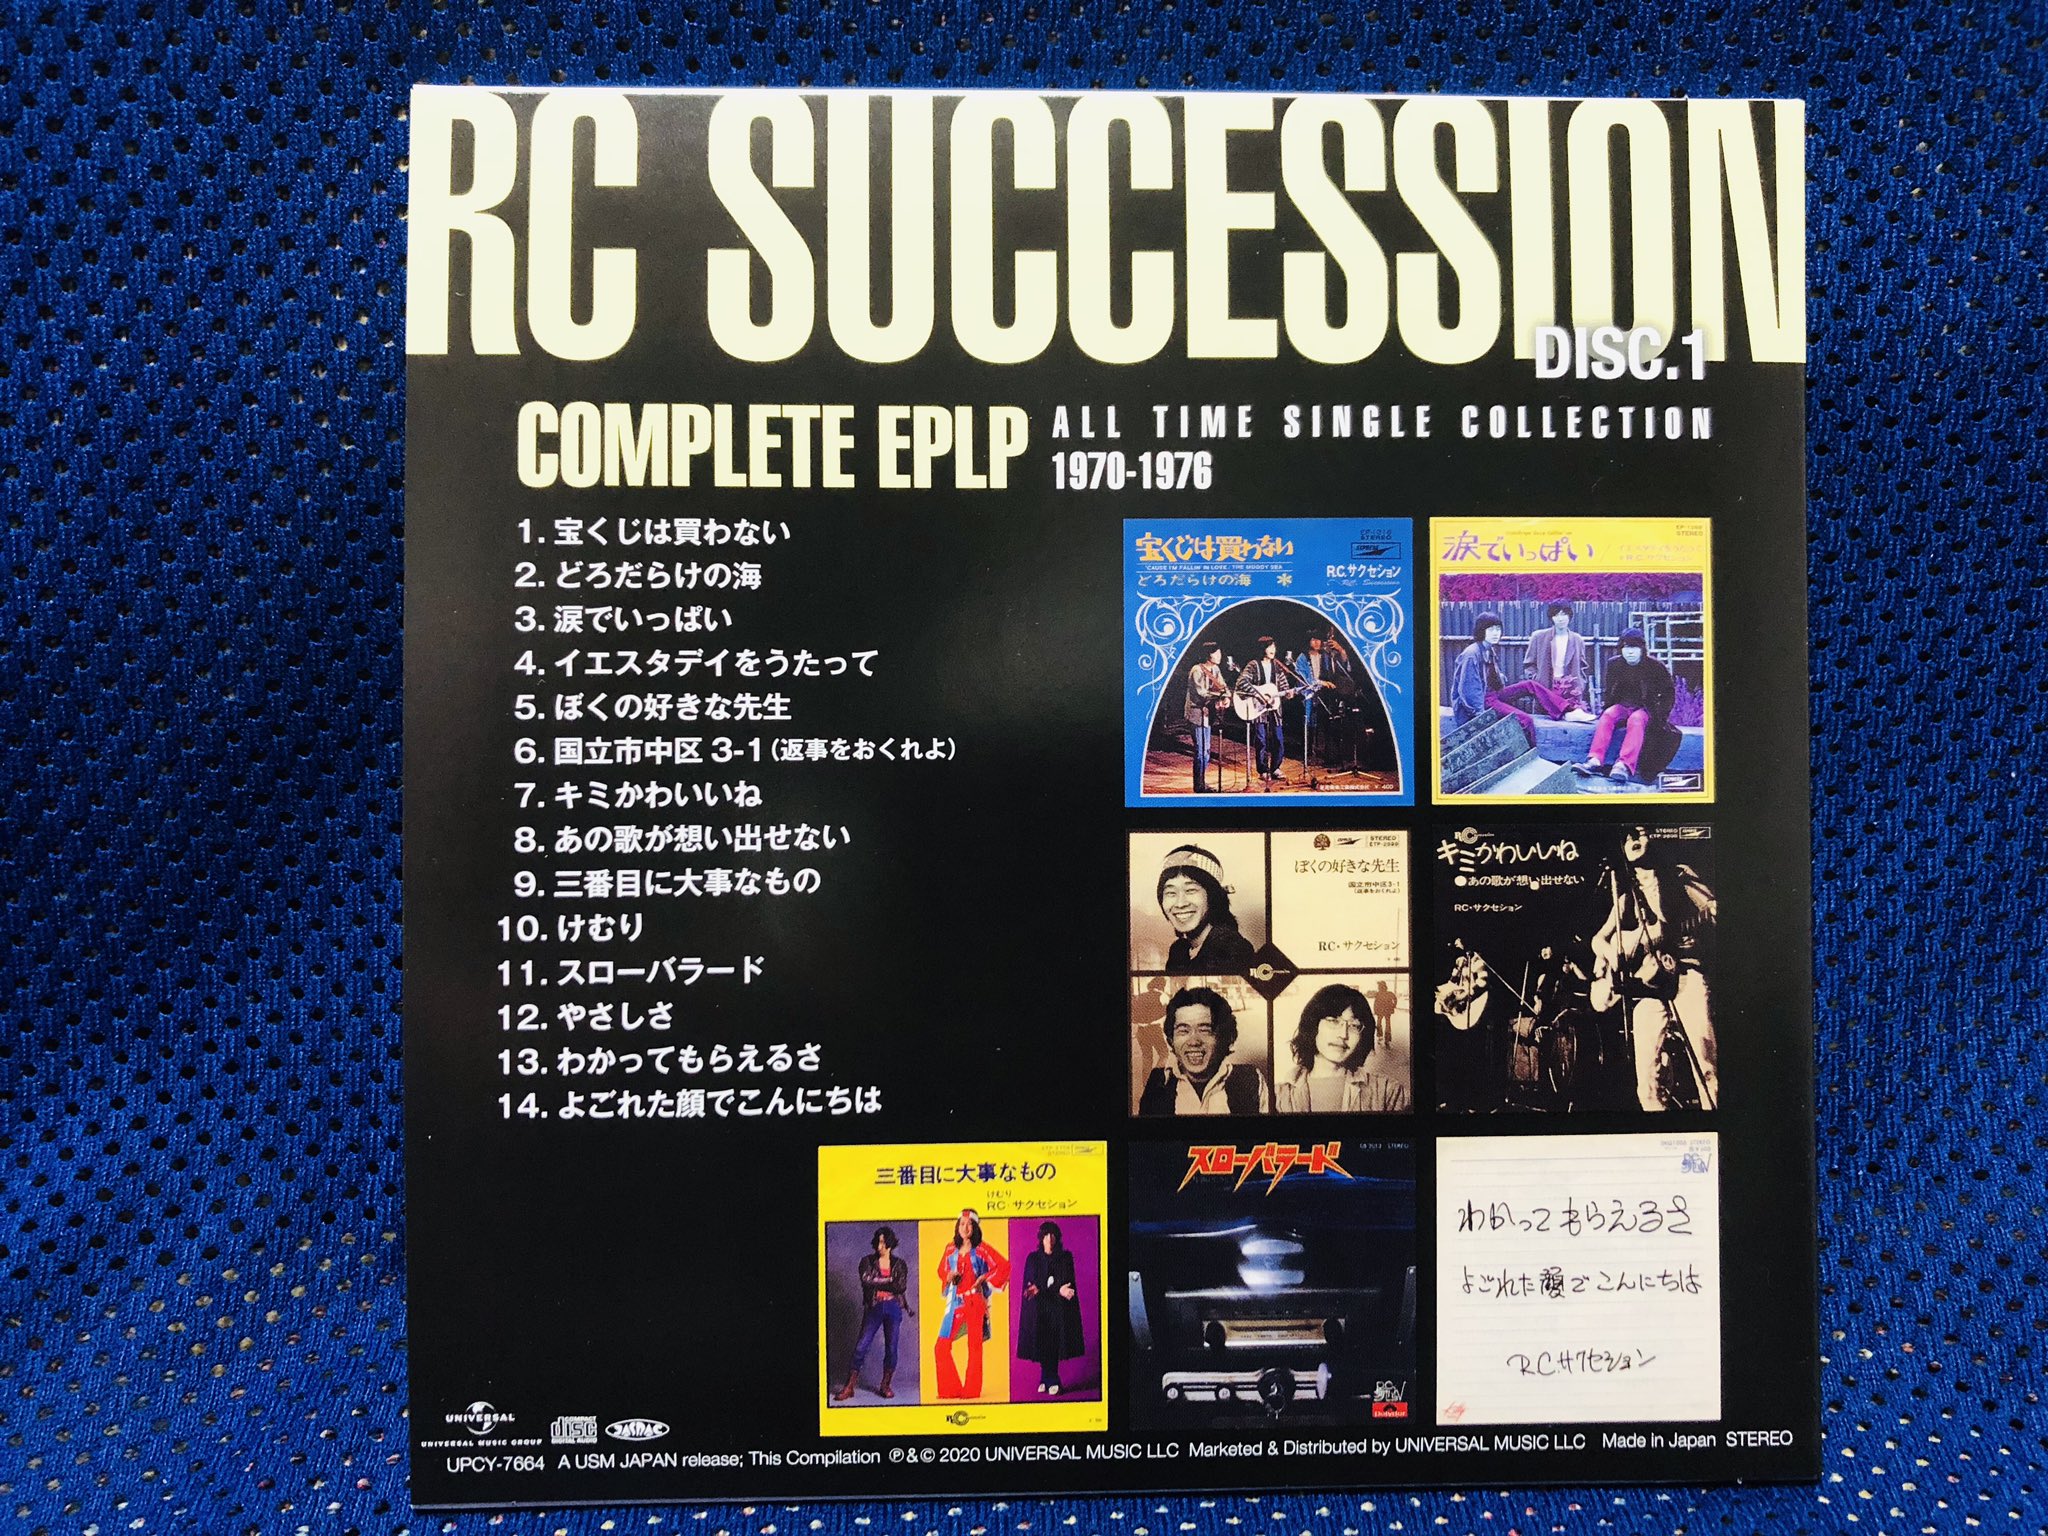 Blue Rcサクセション Complete Eplp でわかるのは 3枚のディスクで見事に分けられたこのバンドの豊かな音楽性だ オールタイムのシングルがまとめられたこの好編集盤を機に 音楽でrc を語り Rcの音楽が語られることを願うばかり T Co